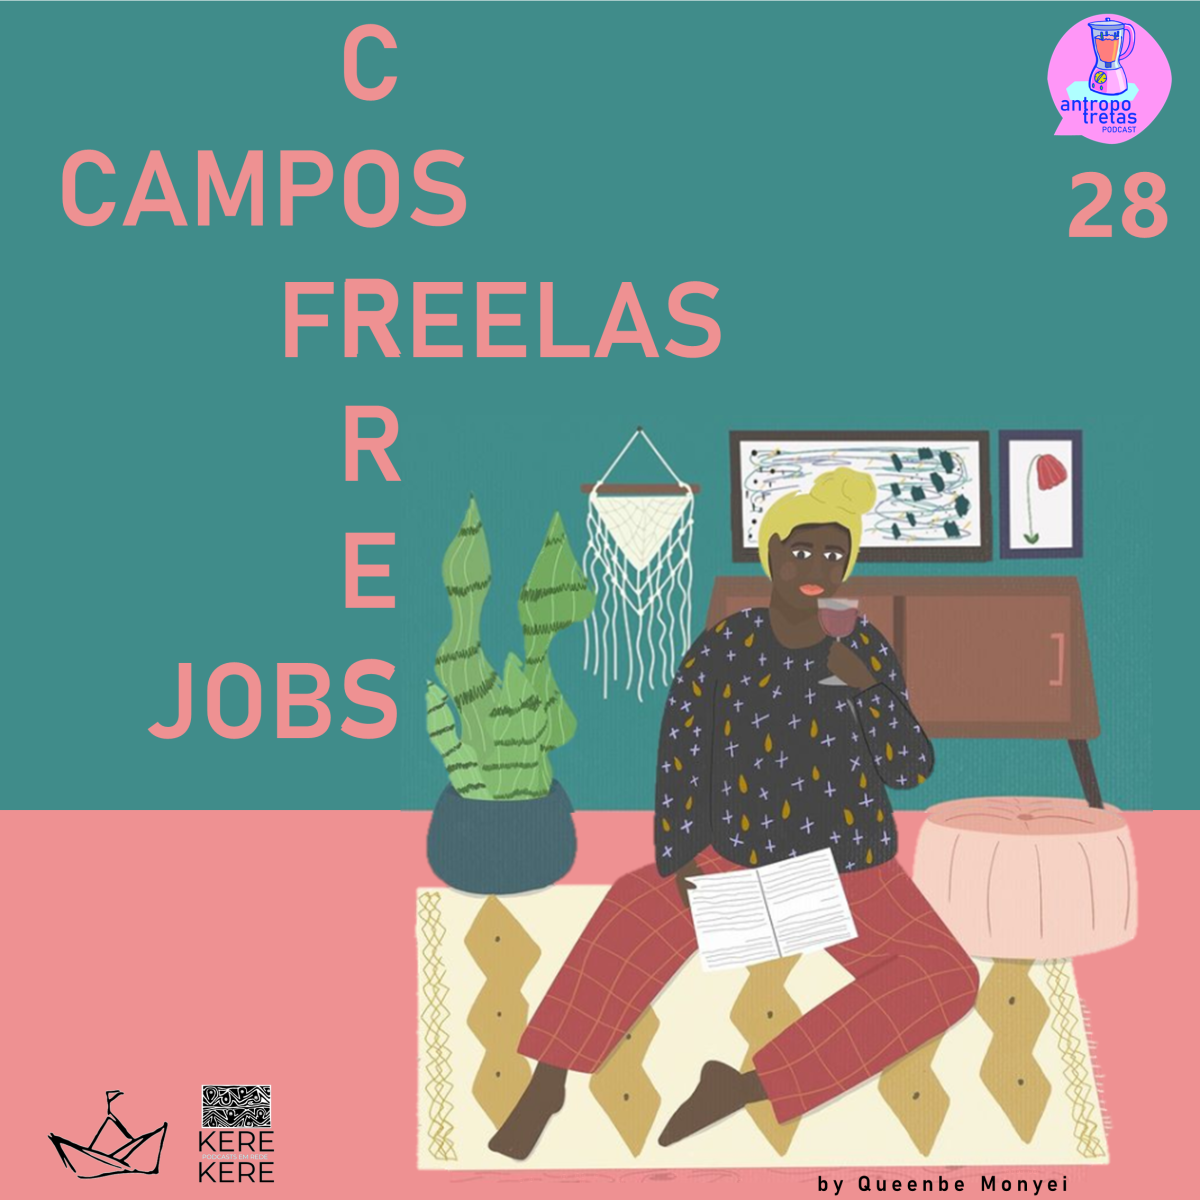 Campos, corres, freelas e jobs